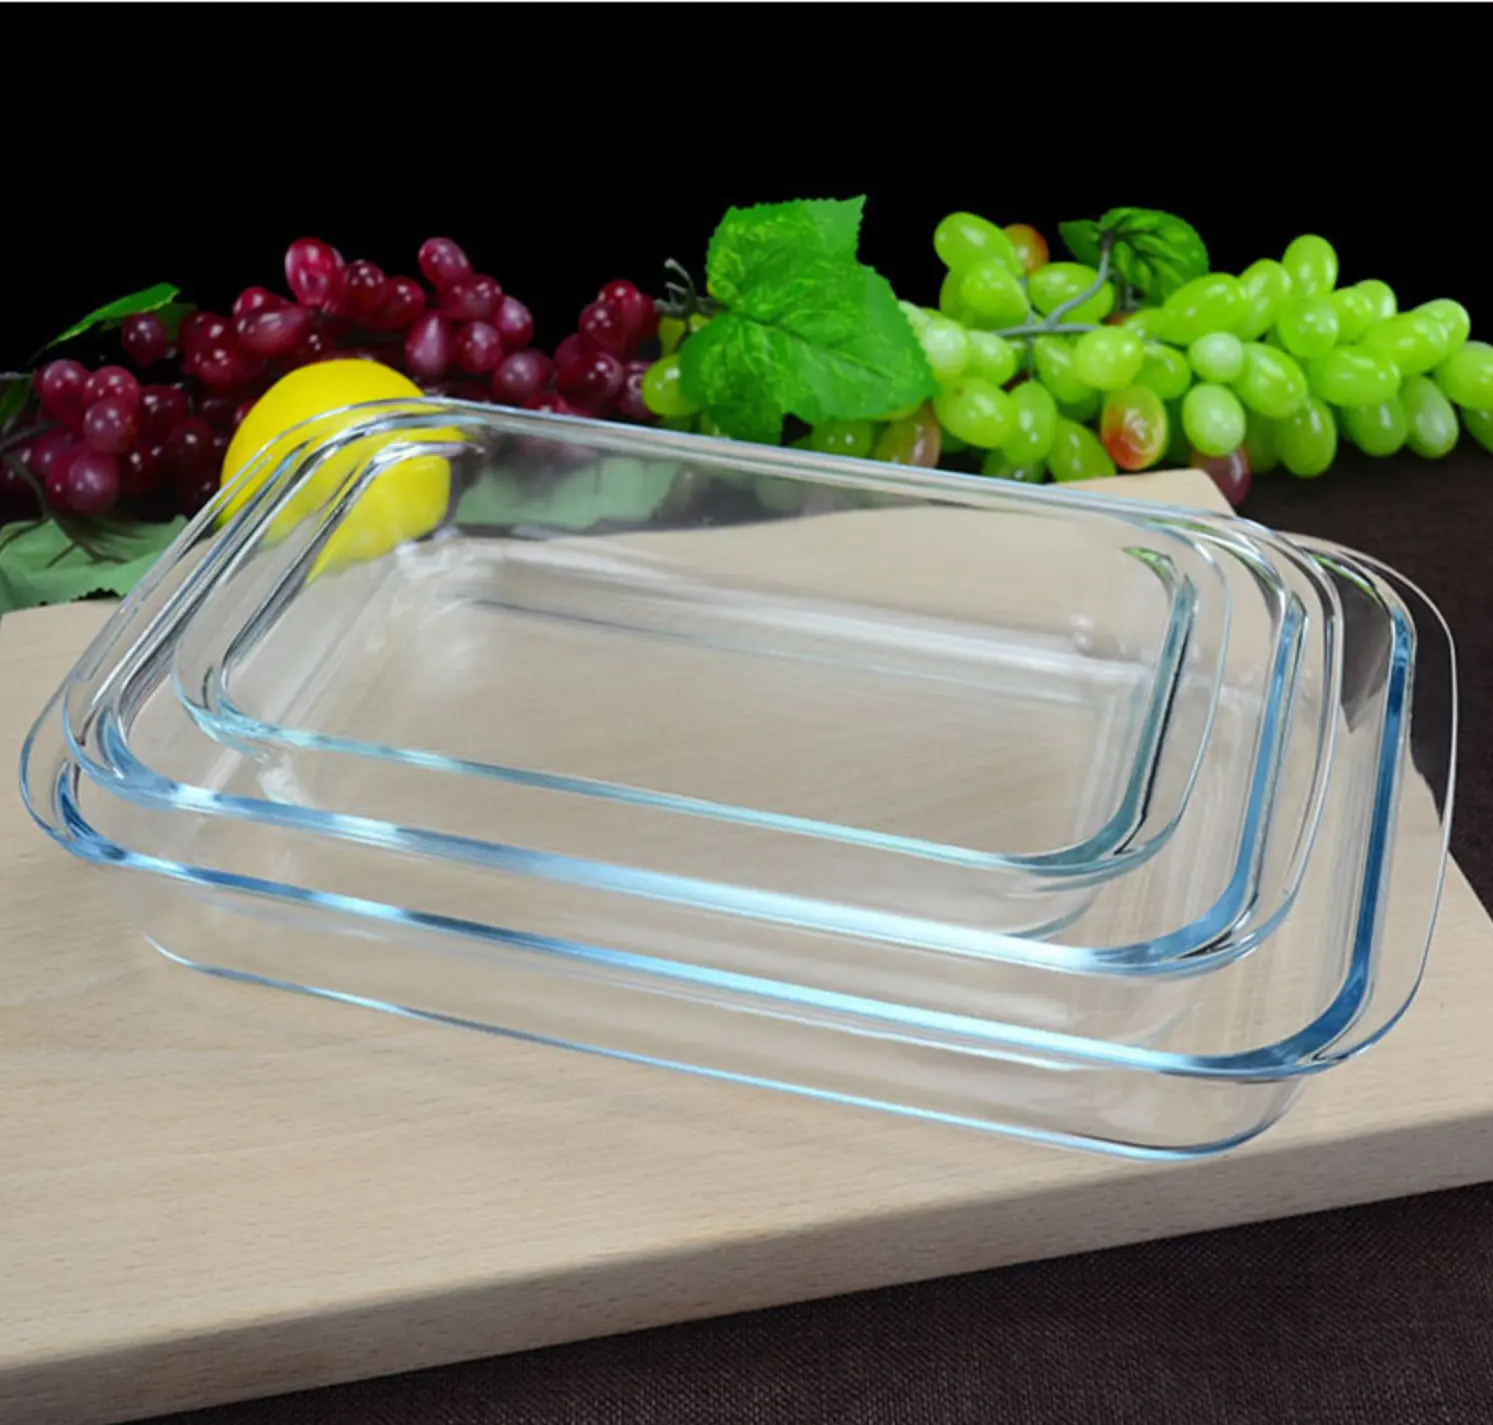 Haushalts waren High Boro silicate Glass Hitze beständiges Rechteck Backform Pan Plate Tray für Ofen